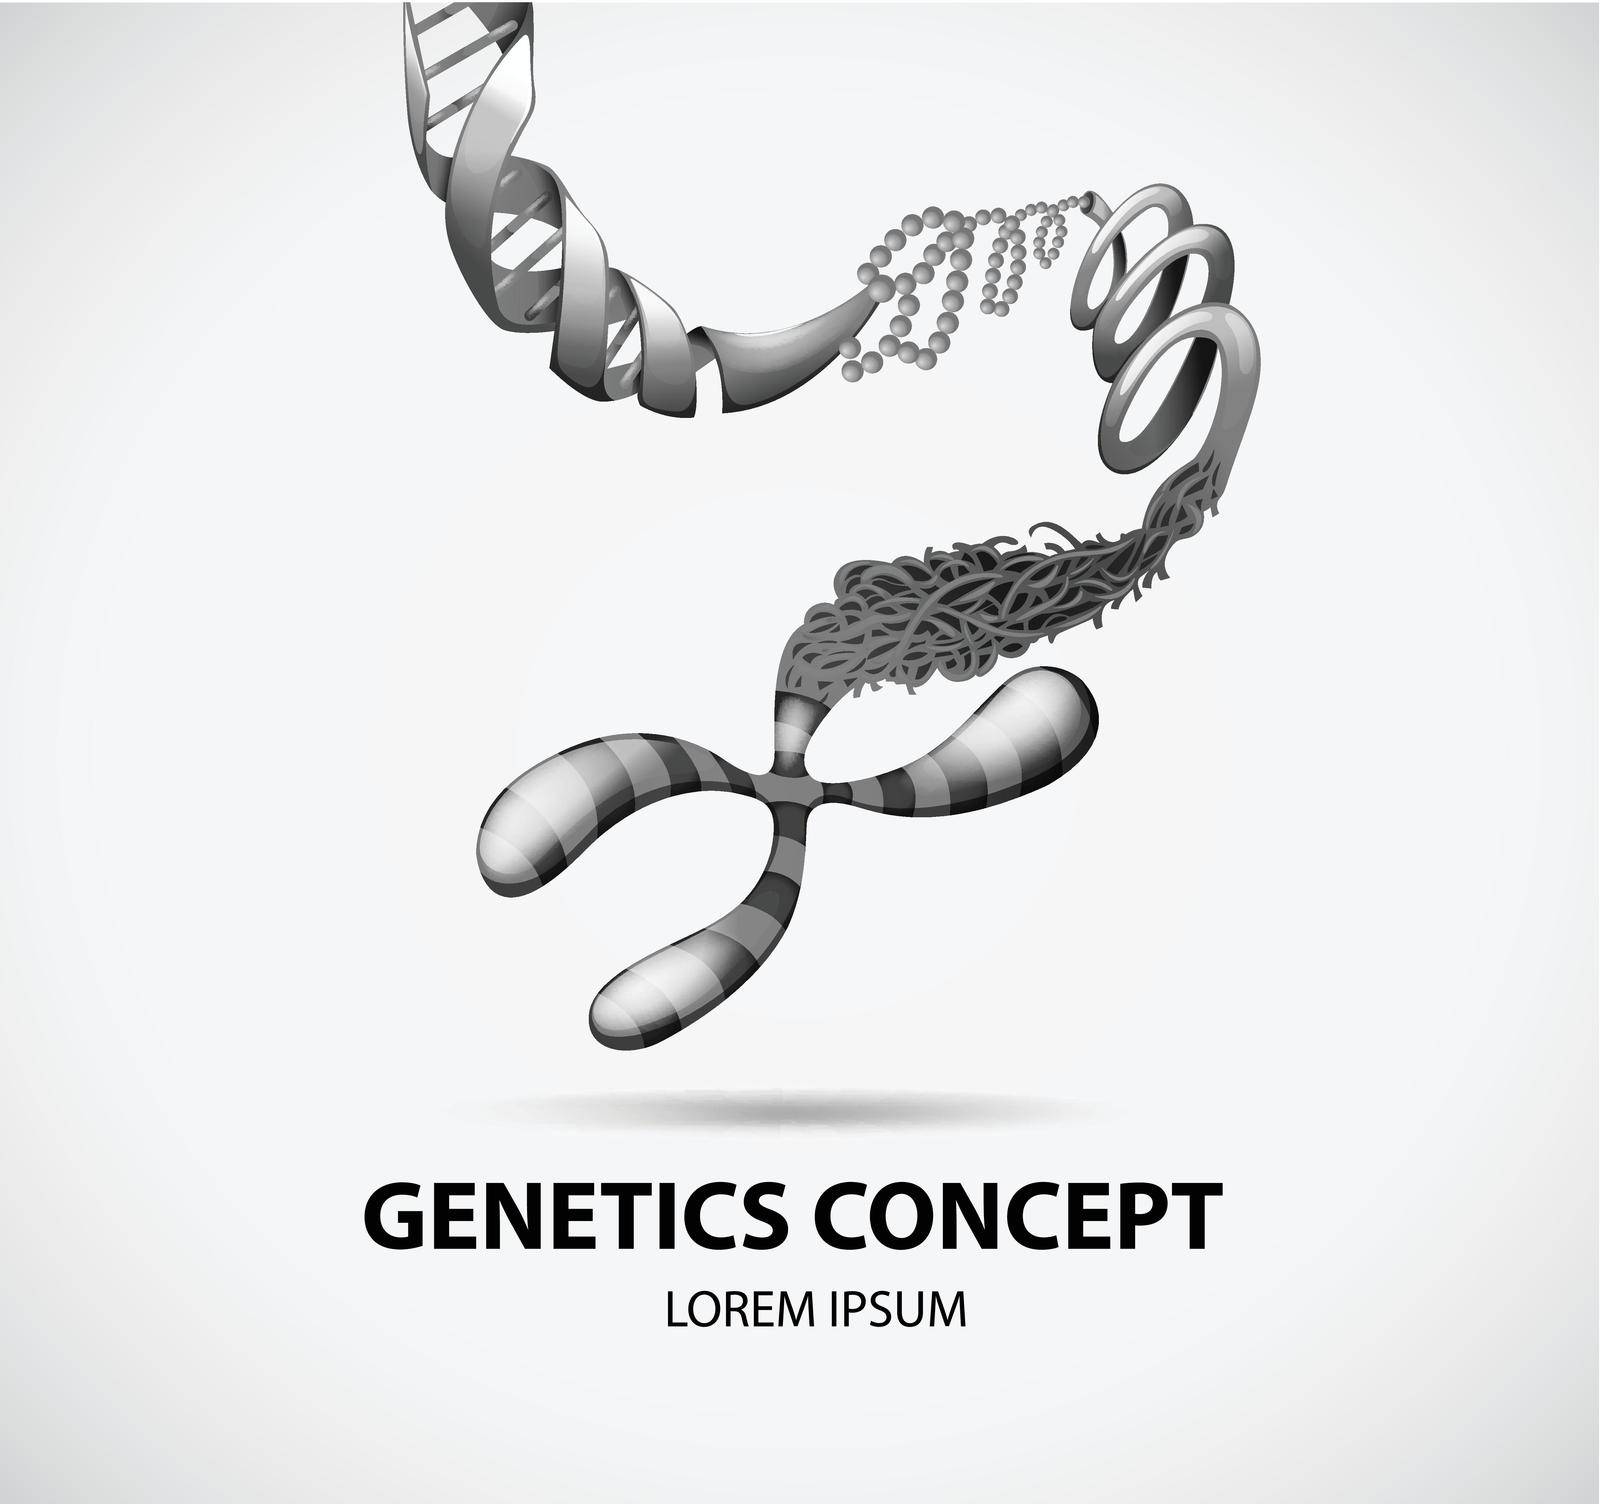 Genetics concept by iimages